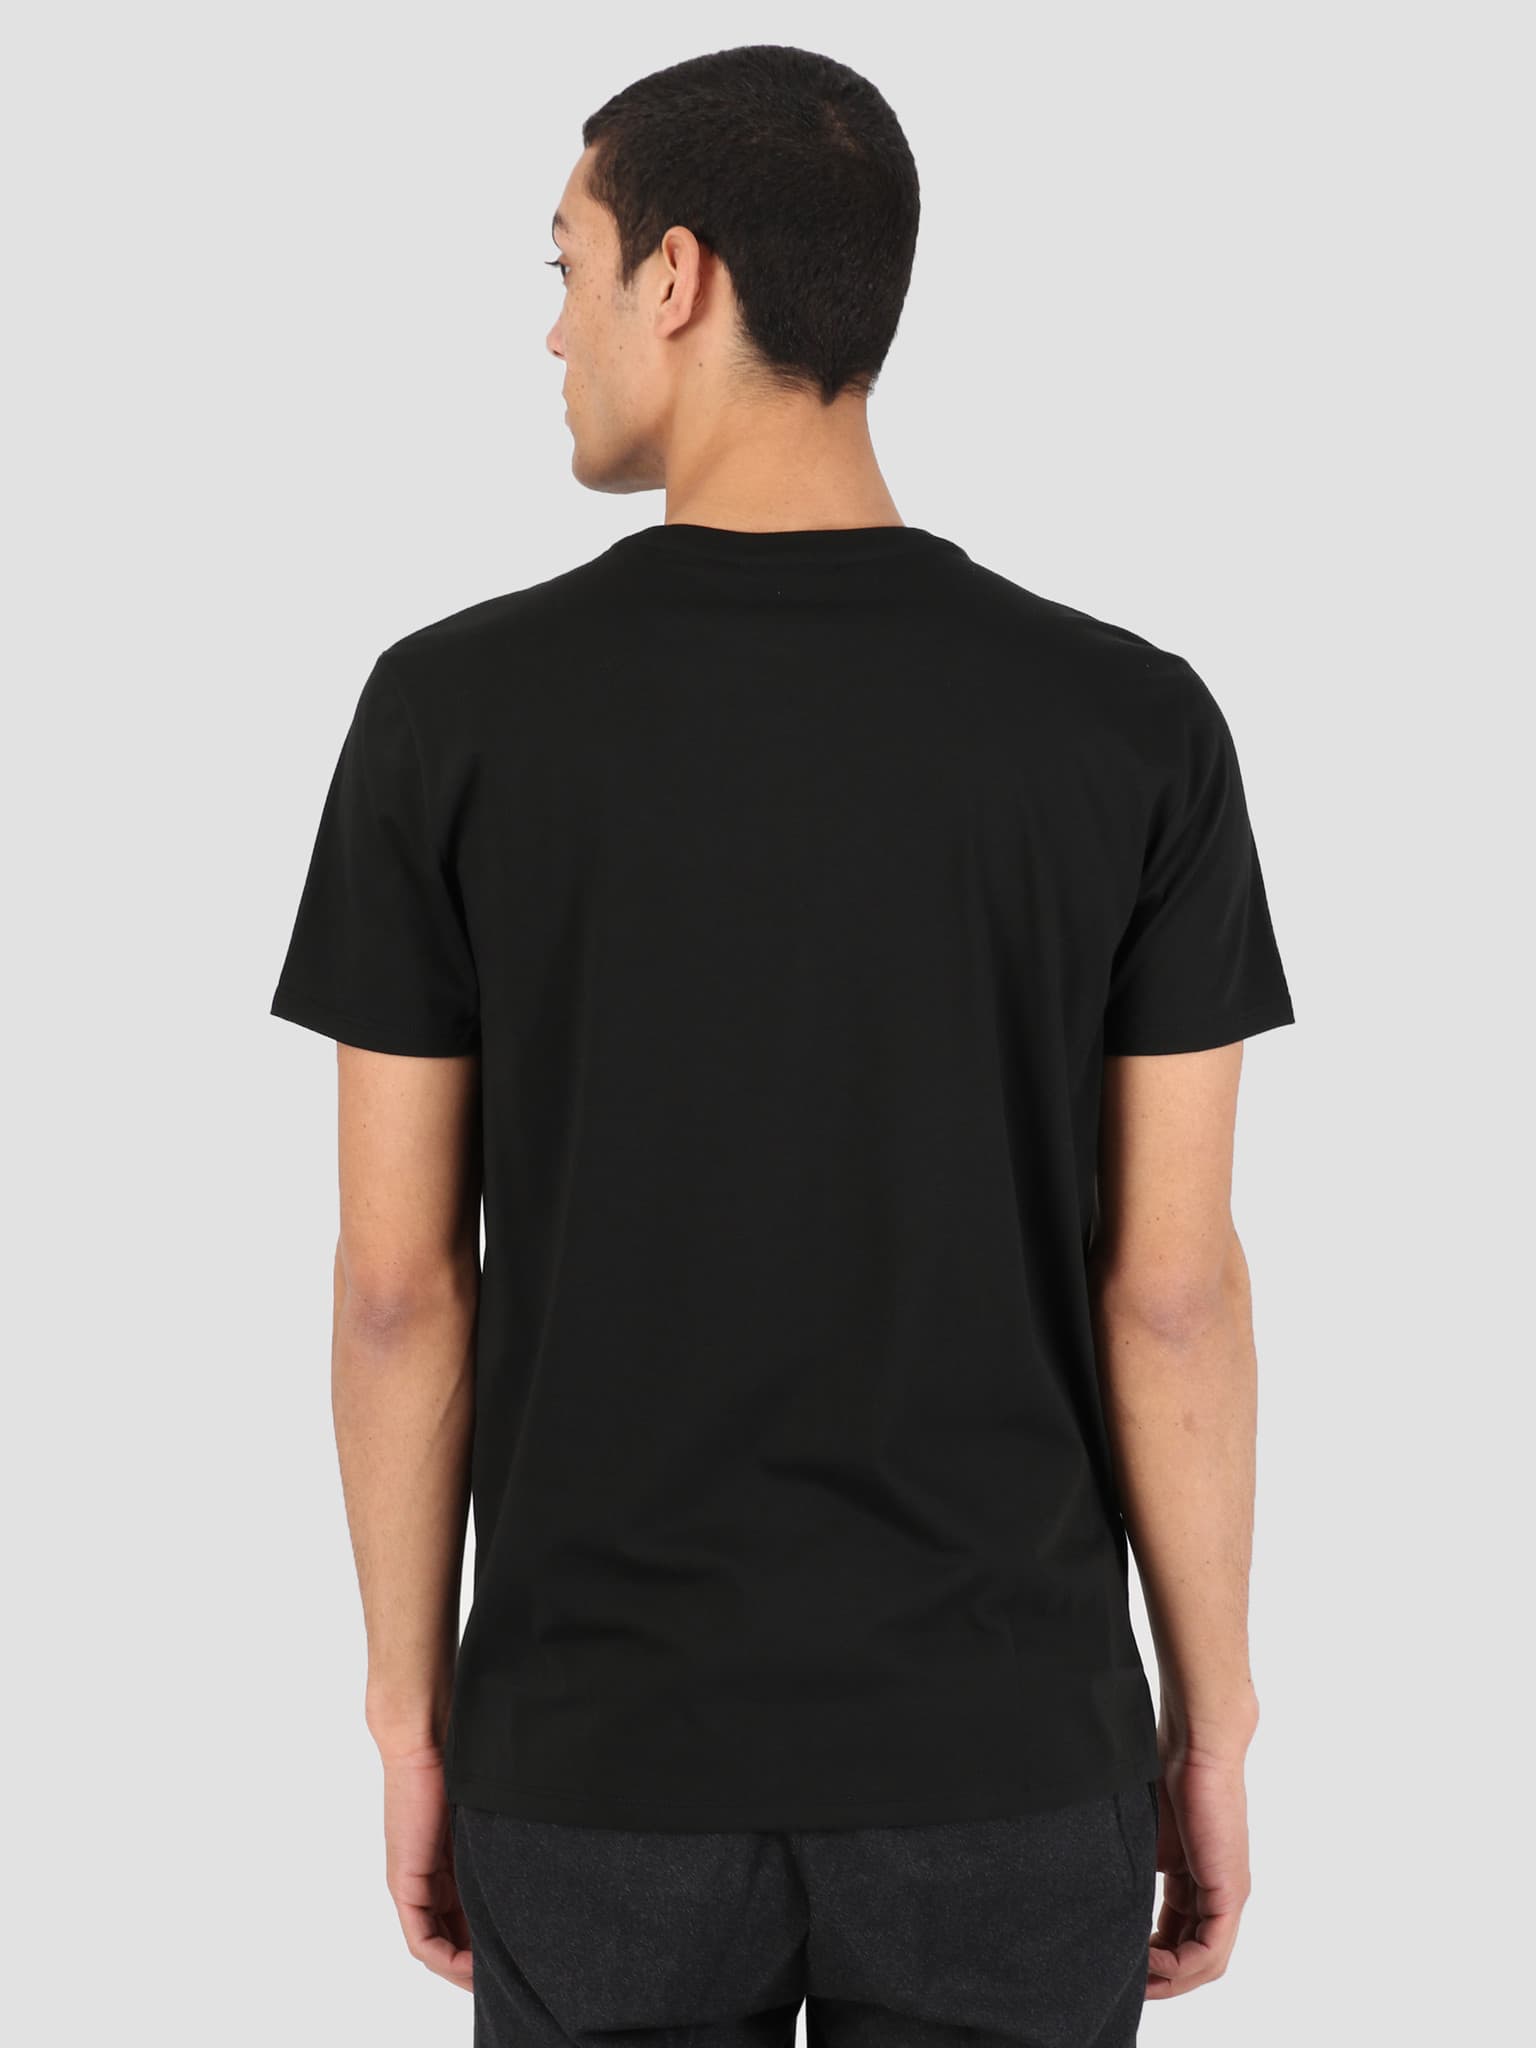 1HT1 Men's T-Shirt 011 Black TH6709-91